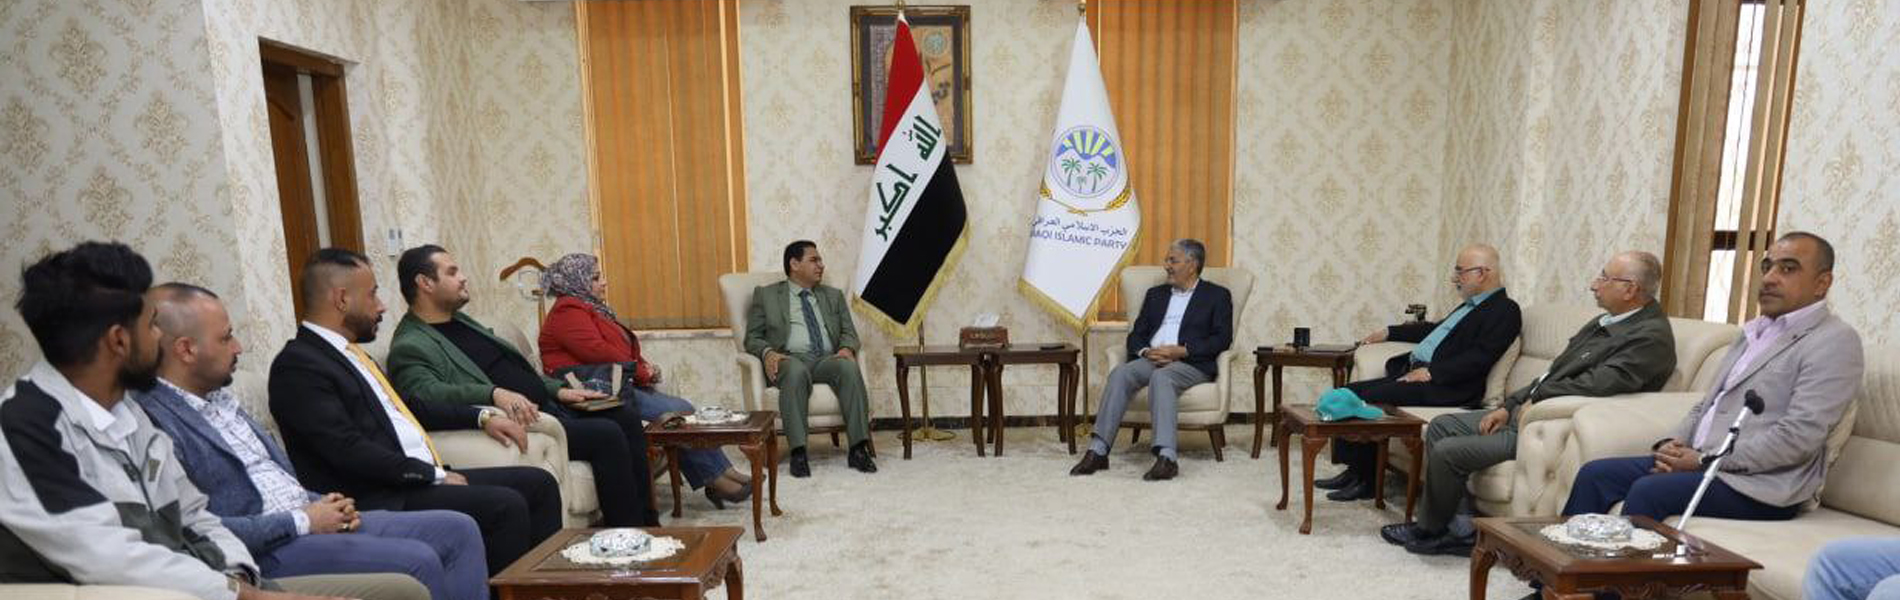 الحزب الإسلامي والعمال العراقي يبحثان العلاقات الثنائية وتطوير المجال النقابي